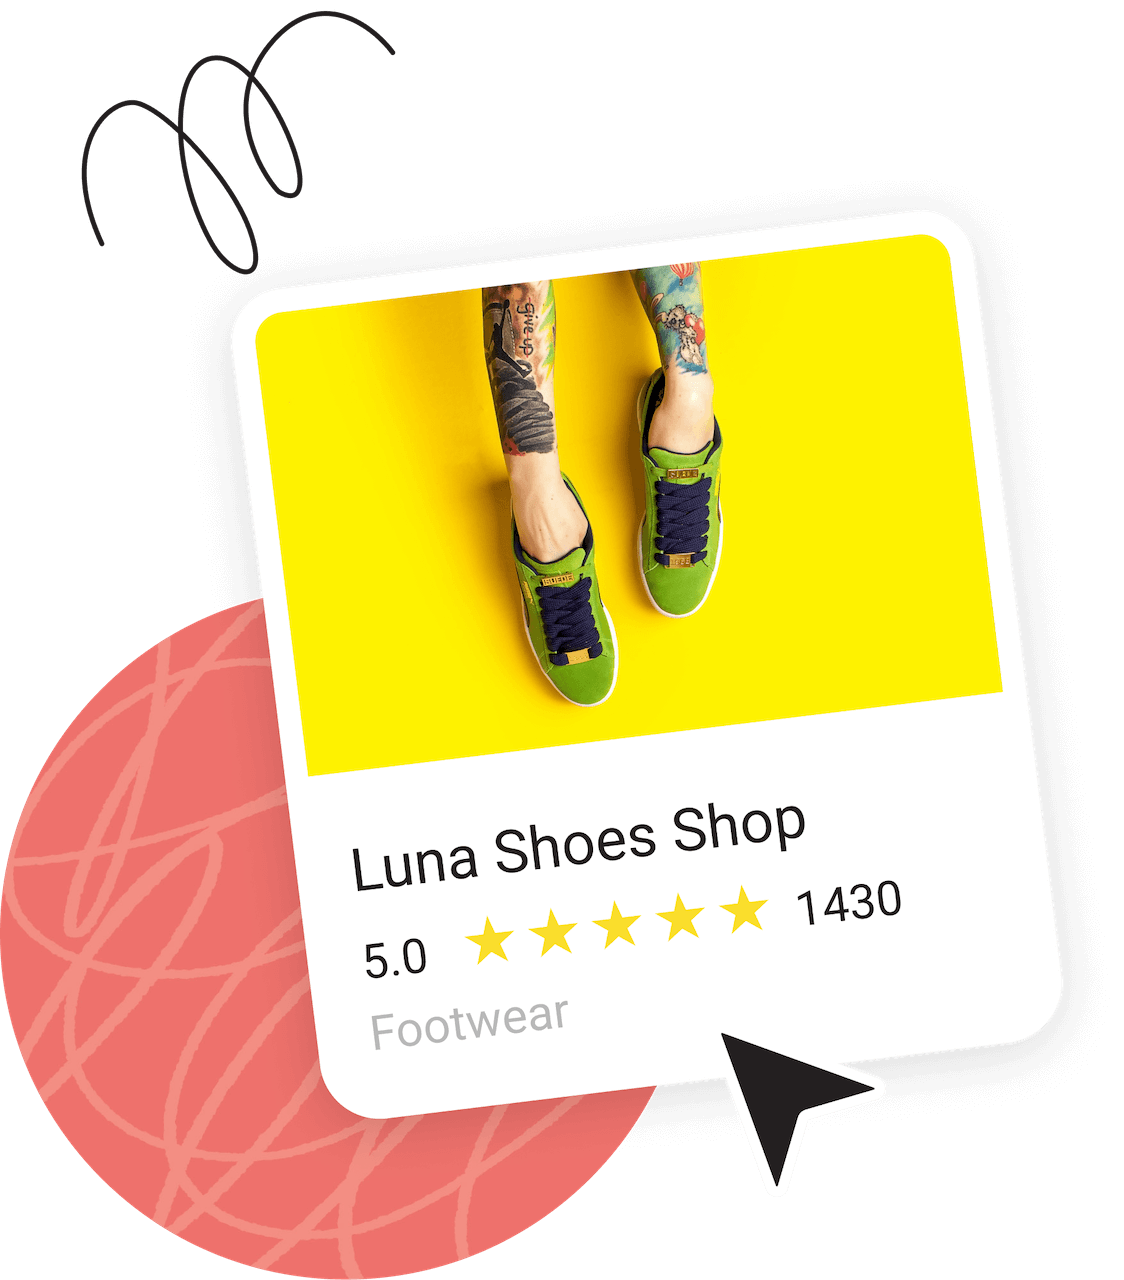 Luna Shoes Google Business Profile